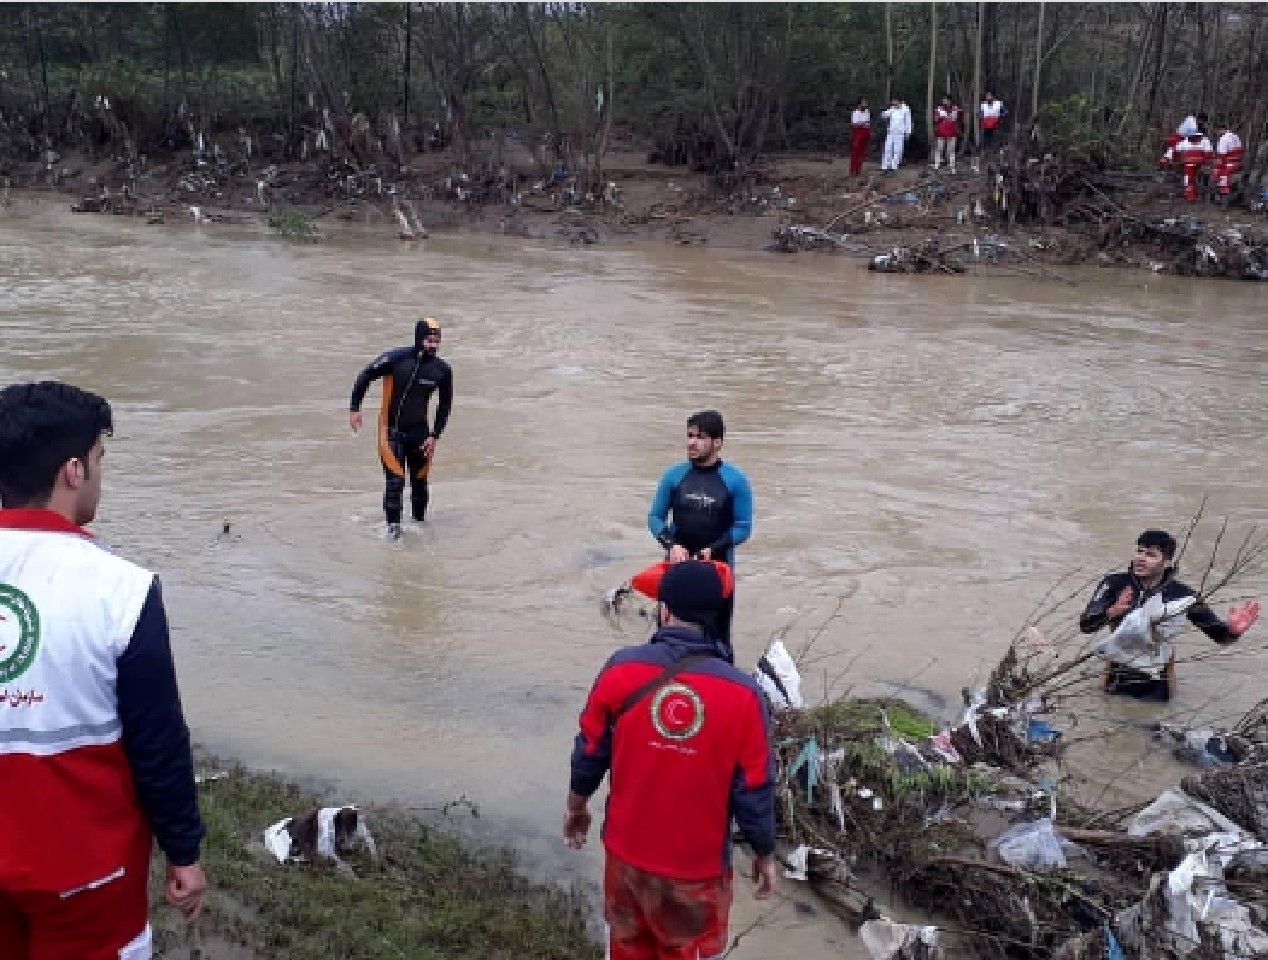  پیکر یکی از سرنشینان خودروی پراید سقوط کرده در رودخانه روبار جیر فومن پیدا شد